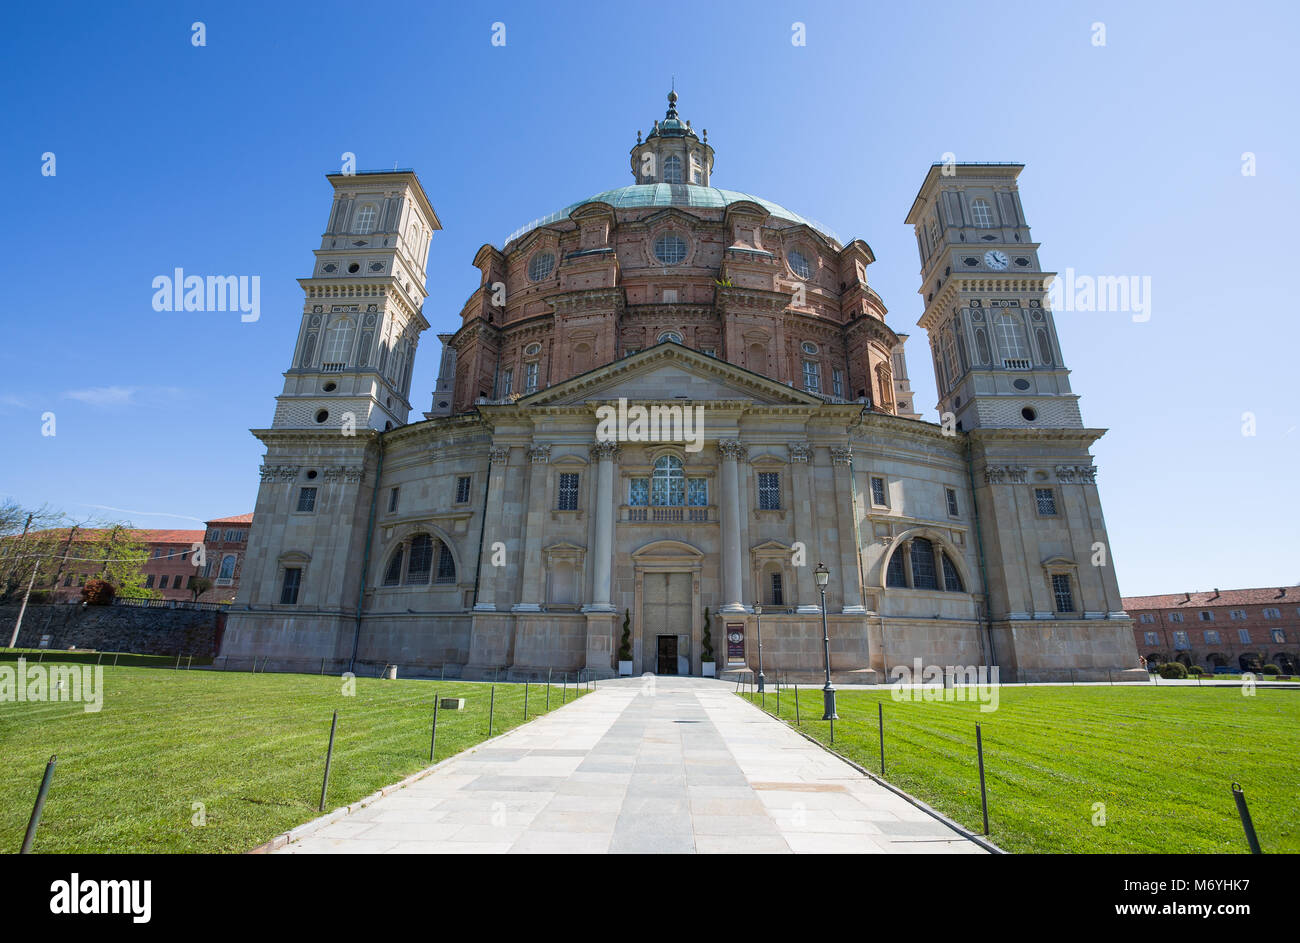 VICOFORTE, ITALIE 11 AVRIL 2017 - Sanctuaire de Vicoforte, province de Cuneo, Piémont, Italie, le plus grand dôme elliptique dans le monde. Banque D'Images